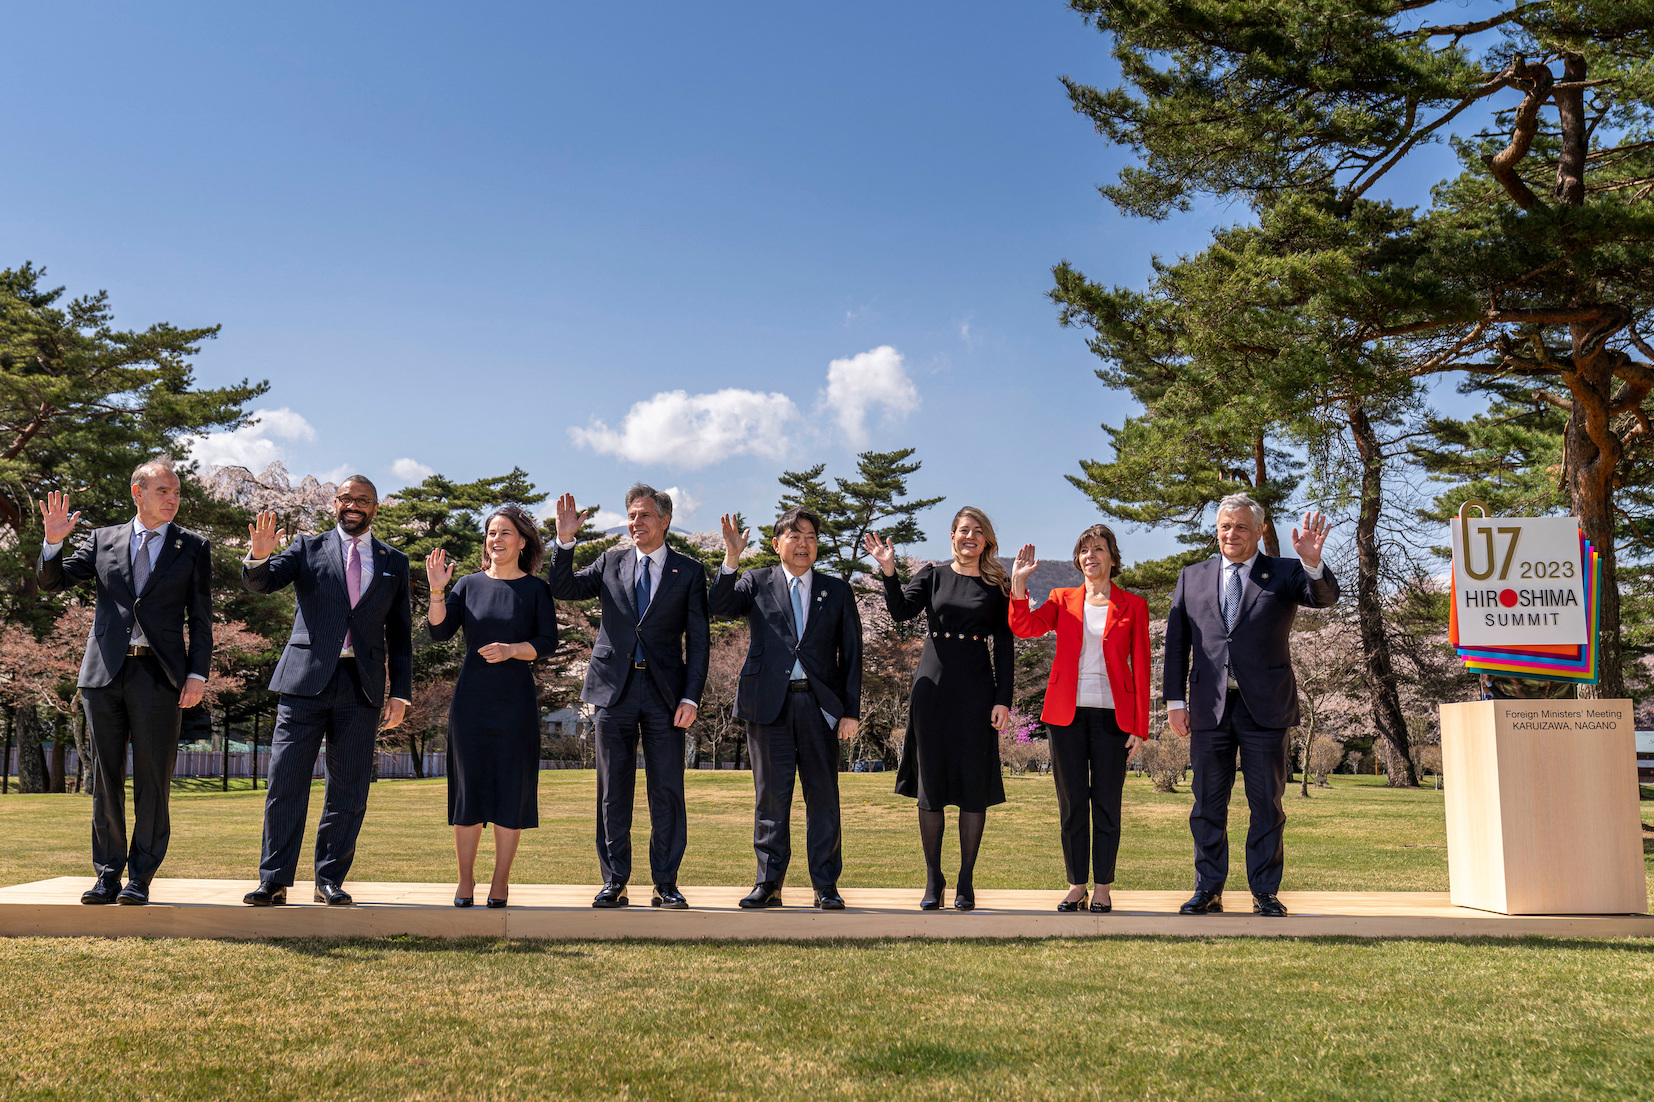 ประชุมรัฐมนตรีต่างประเทศ G7